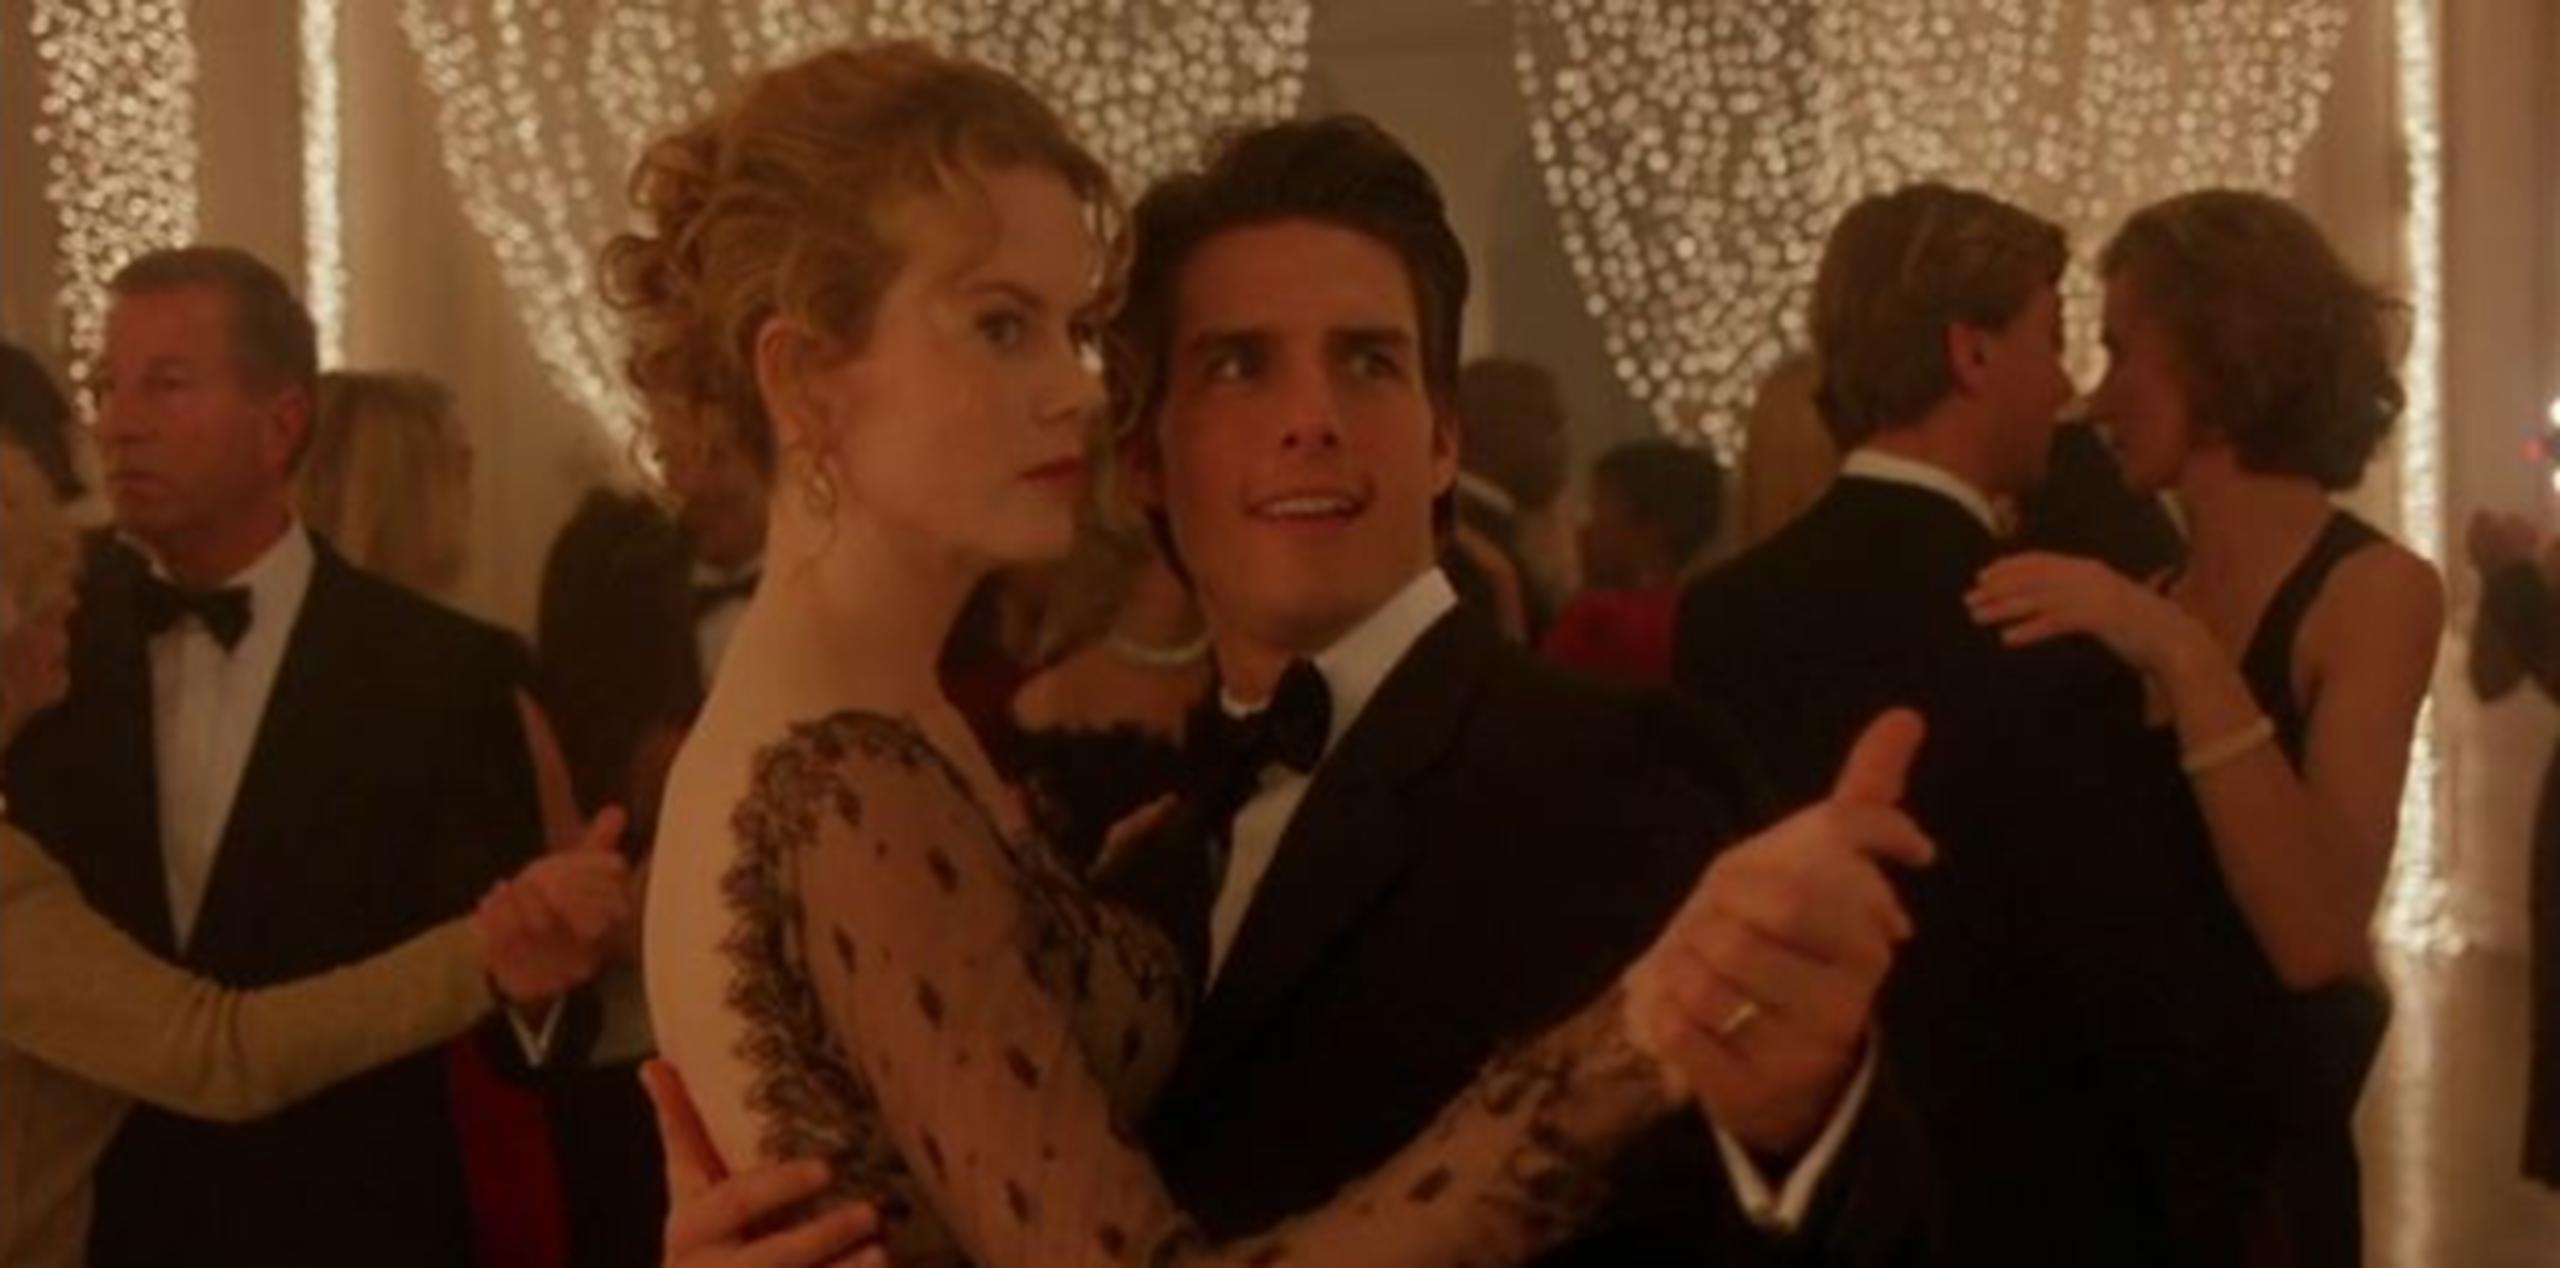 Una de los filmes fue protagonizado por Tom Cruise y Nicole Kidman. (Archivo)